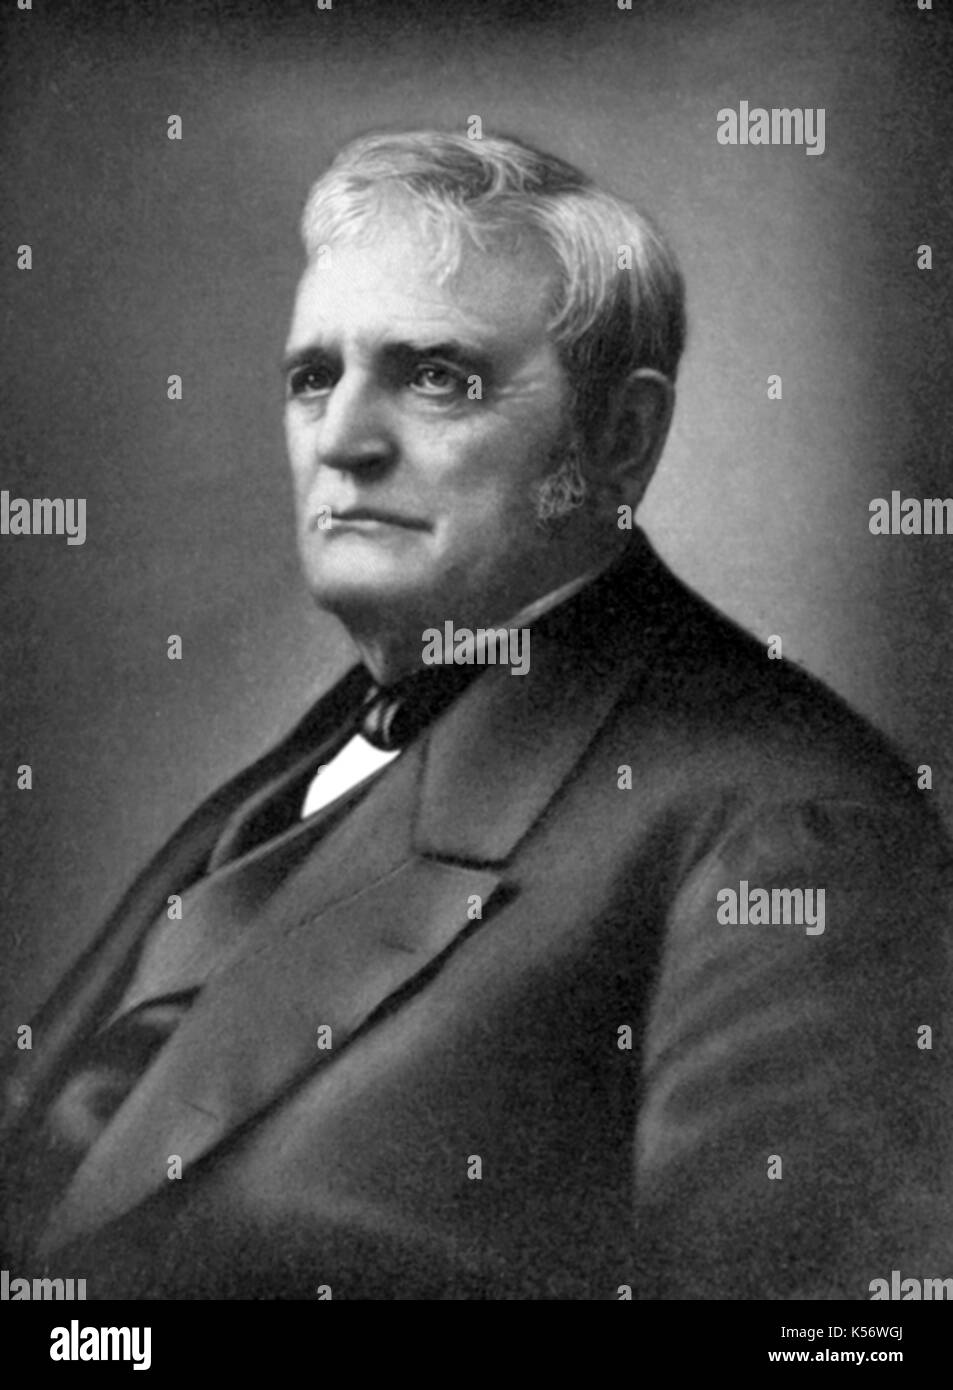 John Deere (Februar 7, 1804 - Mai 17, 1886) amerikanischer Schmied und Hersteller, Deere & Company gegründet und erfand die erste kommerziell erfolgreiche Stahl 1837 Pflug. Stockfoto